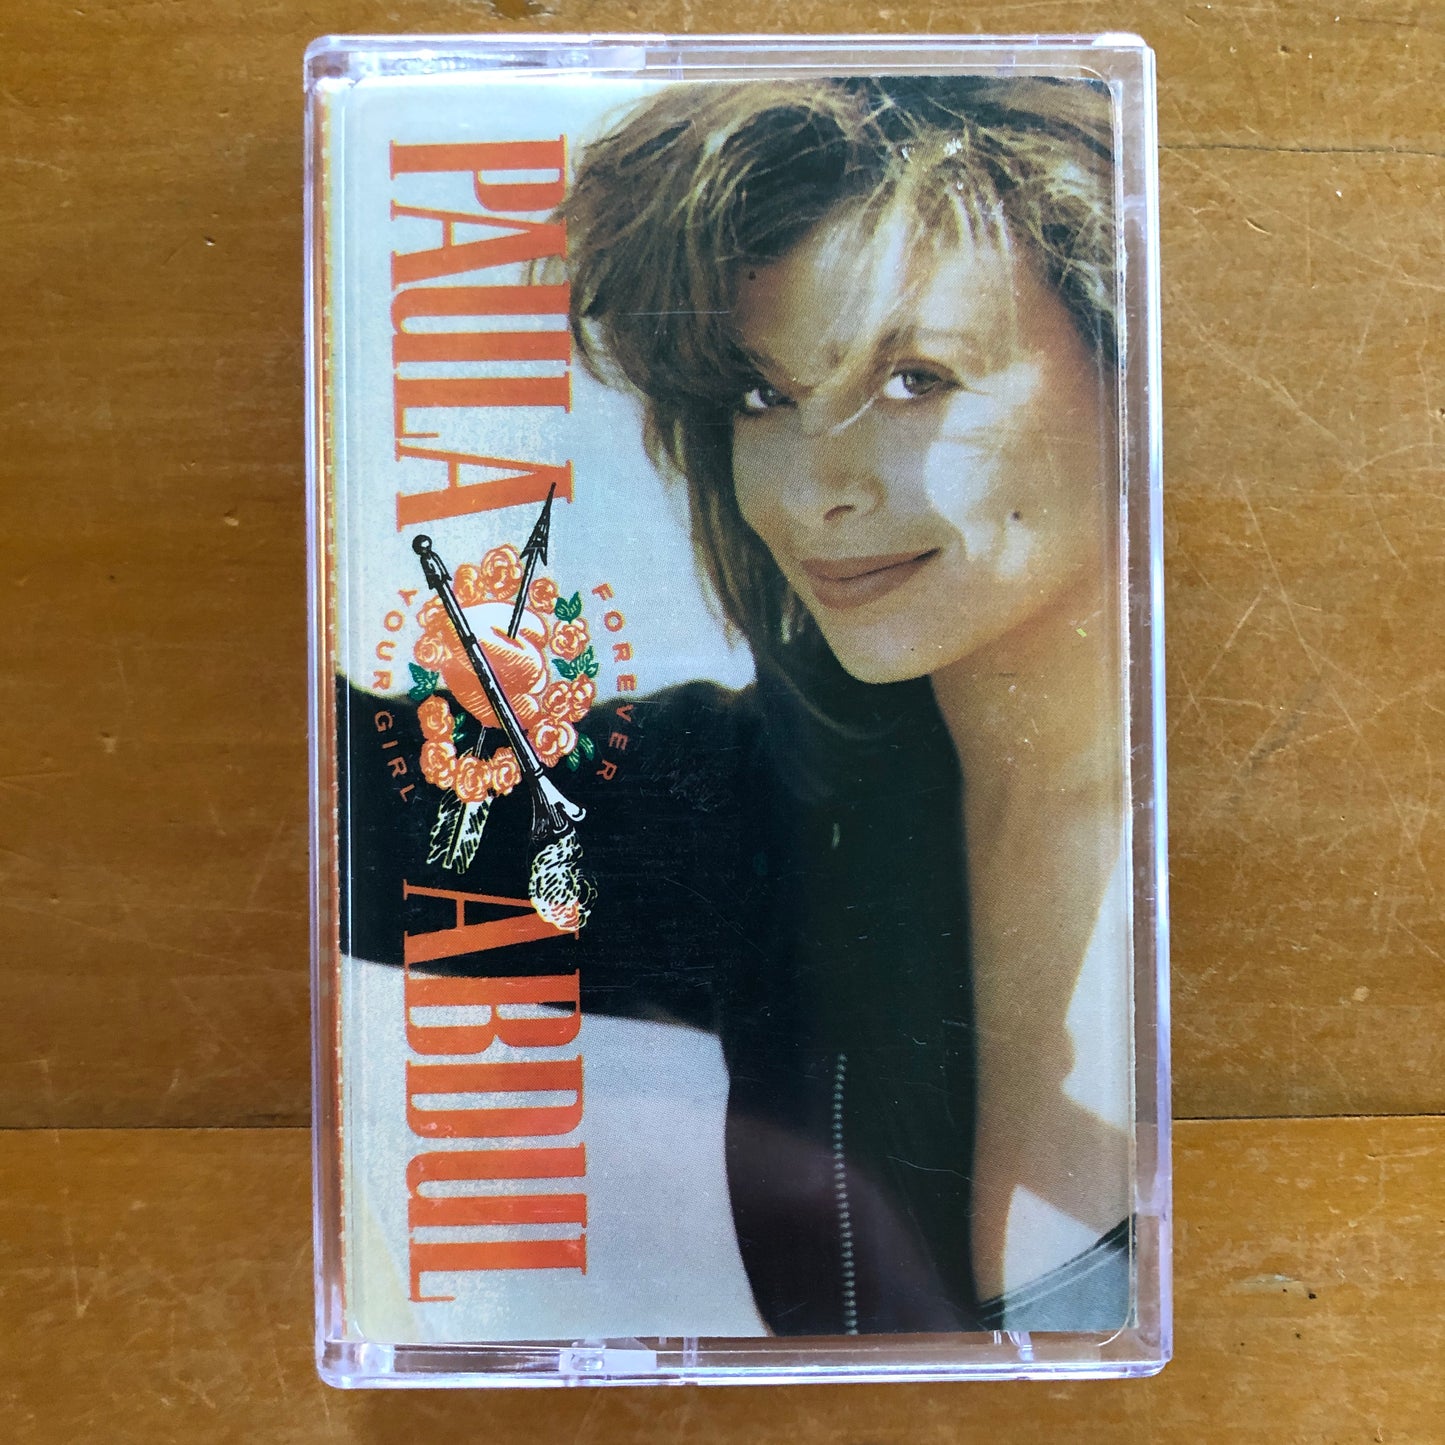 Paula Abdul - Forever Your Girl (cassette)